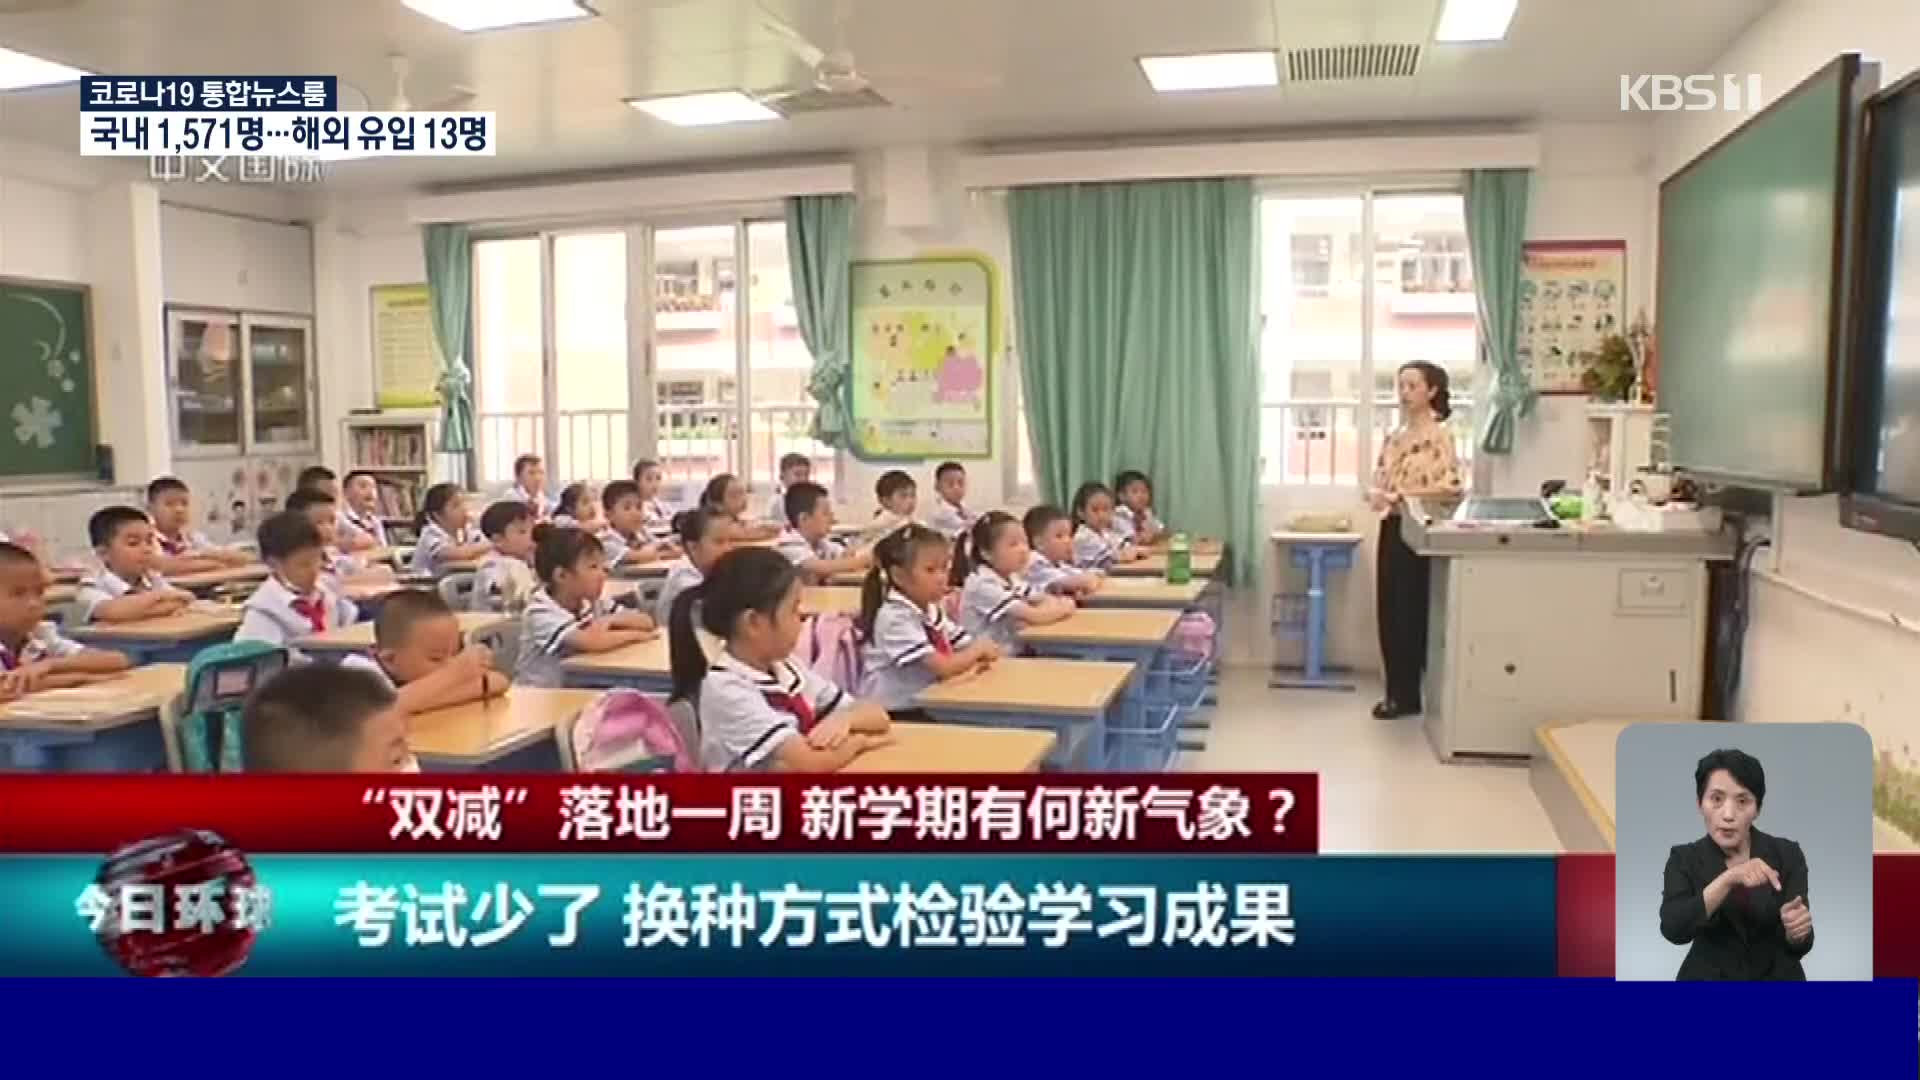 중국 취업시장에서 새롭게 각광받는 ‘교사직’